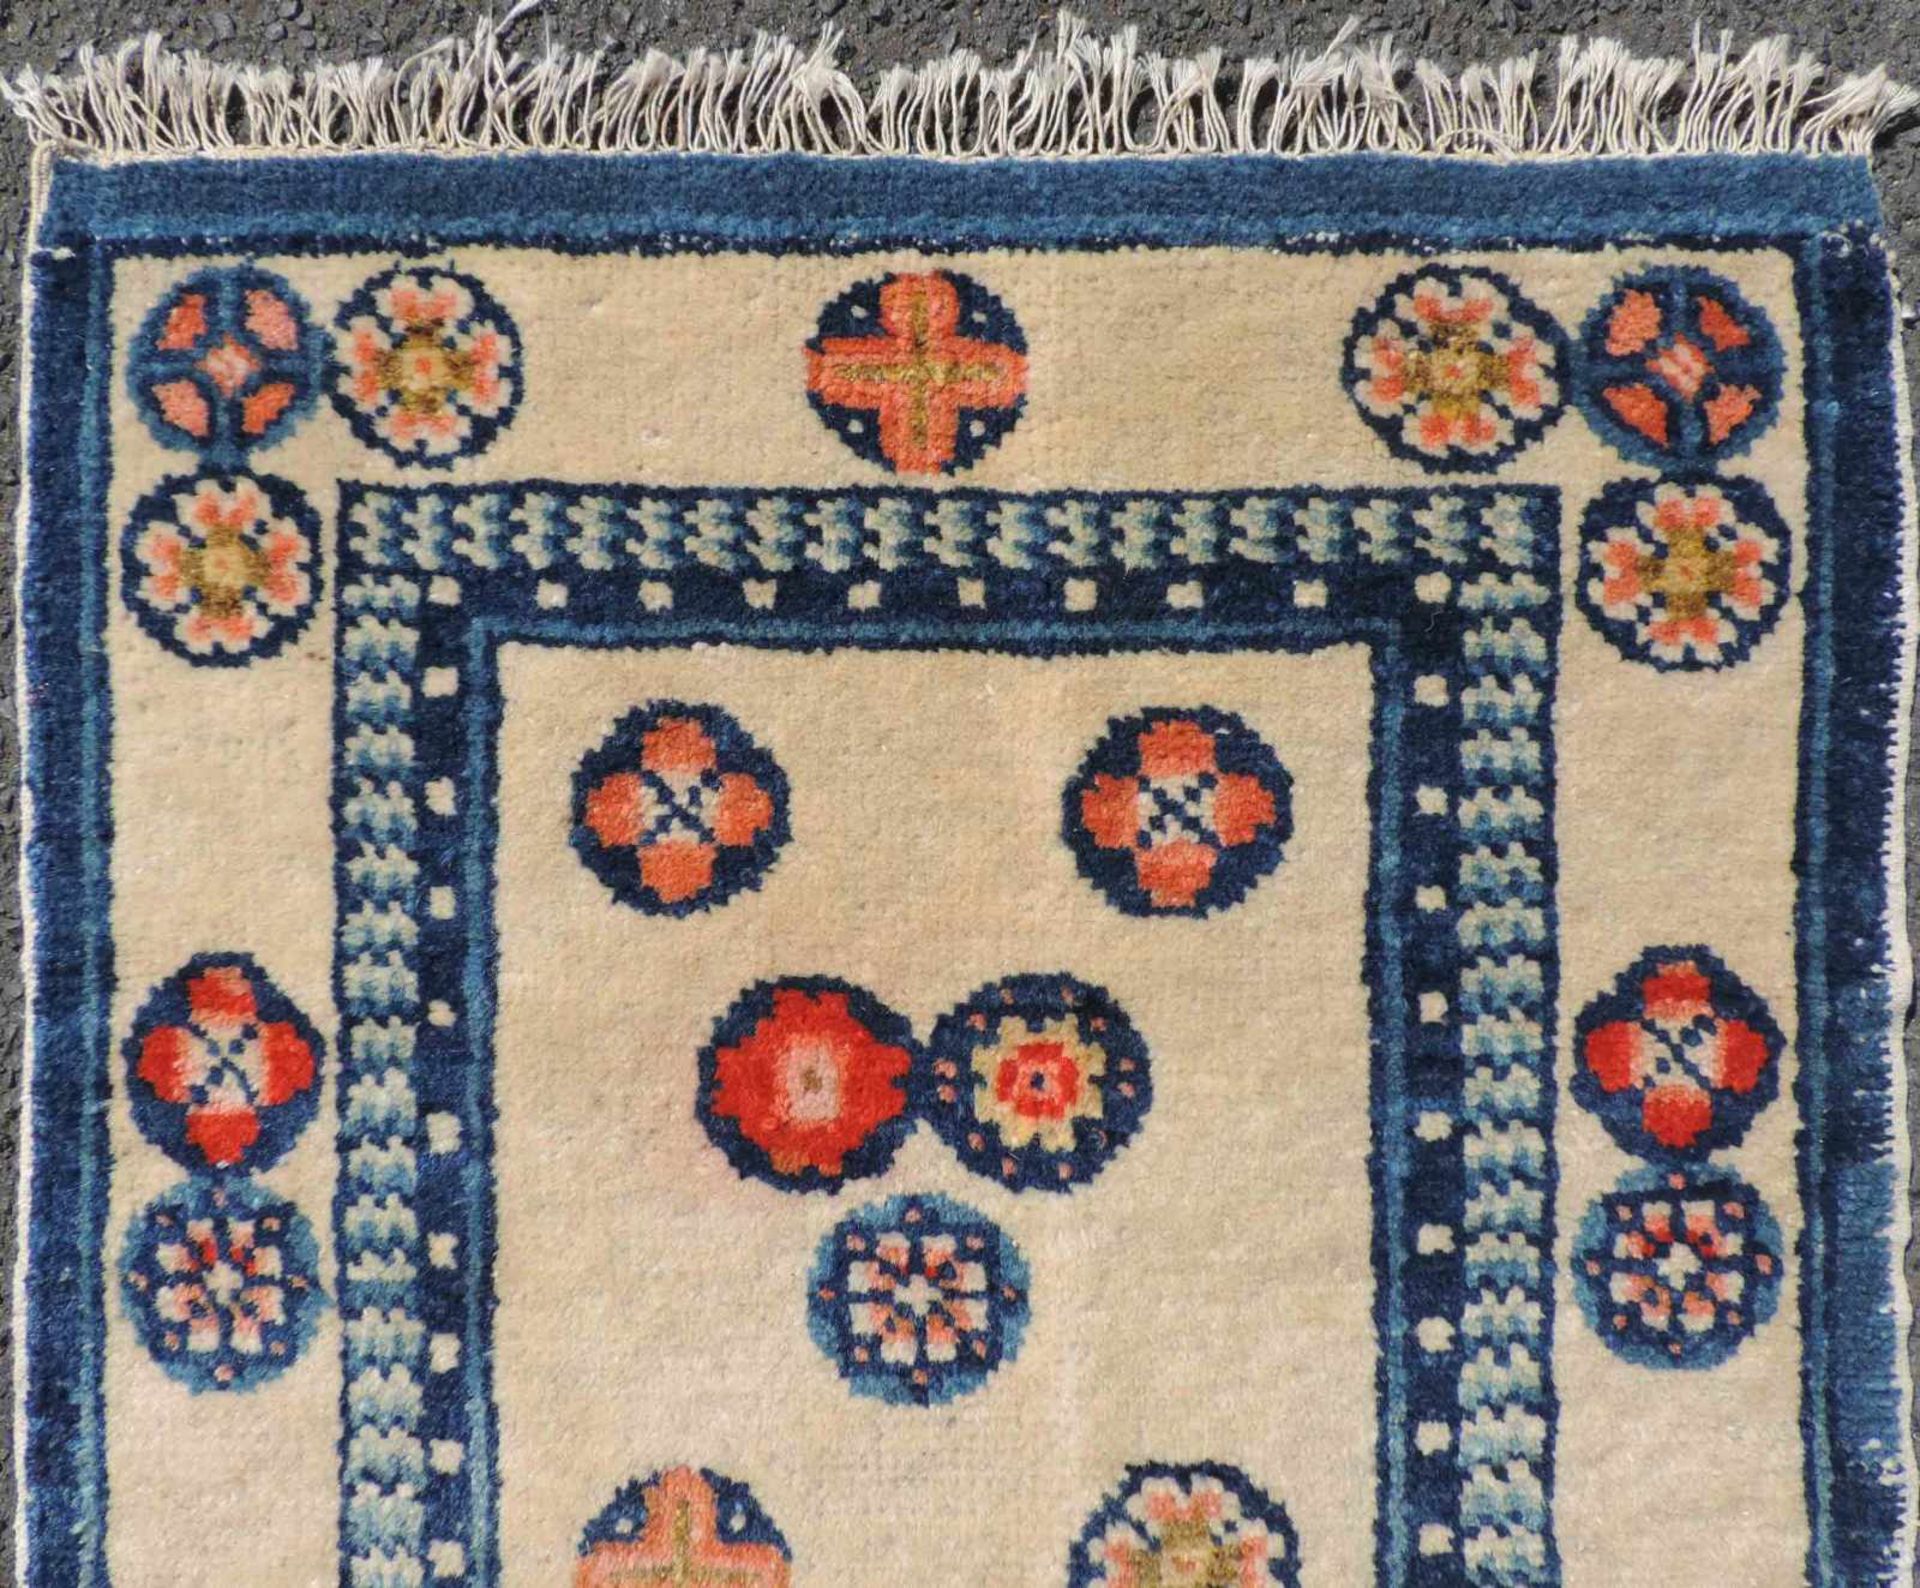 Pau Tou Meditationsteppich. China, antik, um 1900. 87 cm x 50 cm. Handgeknüpft, Wolle auf Baumwolle. - Bild 3 aus 4